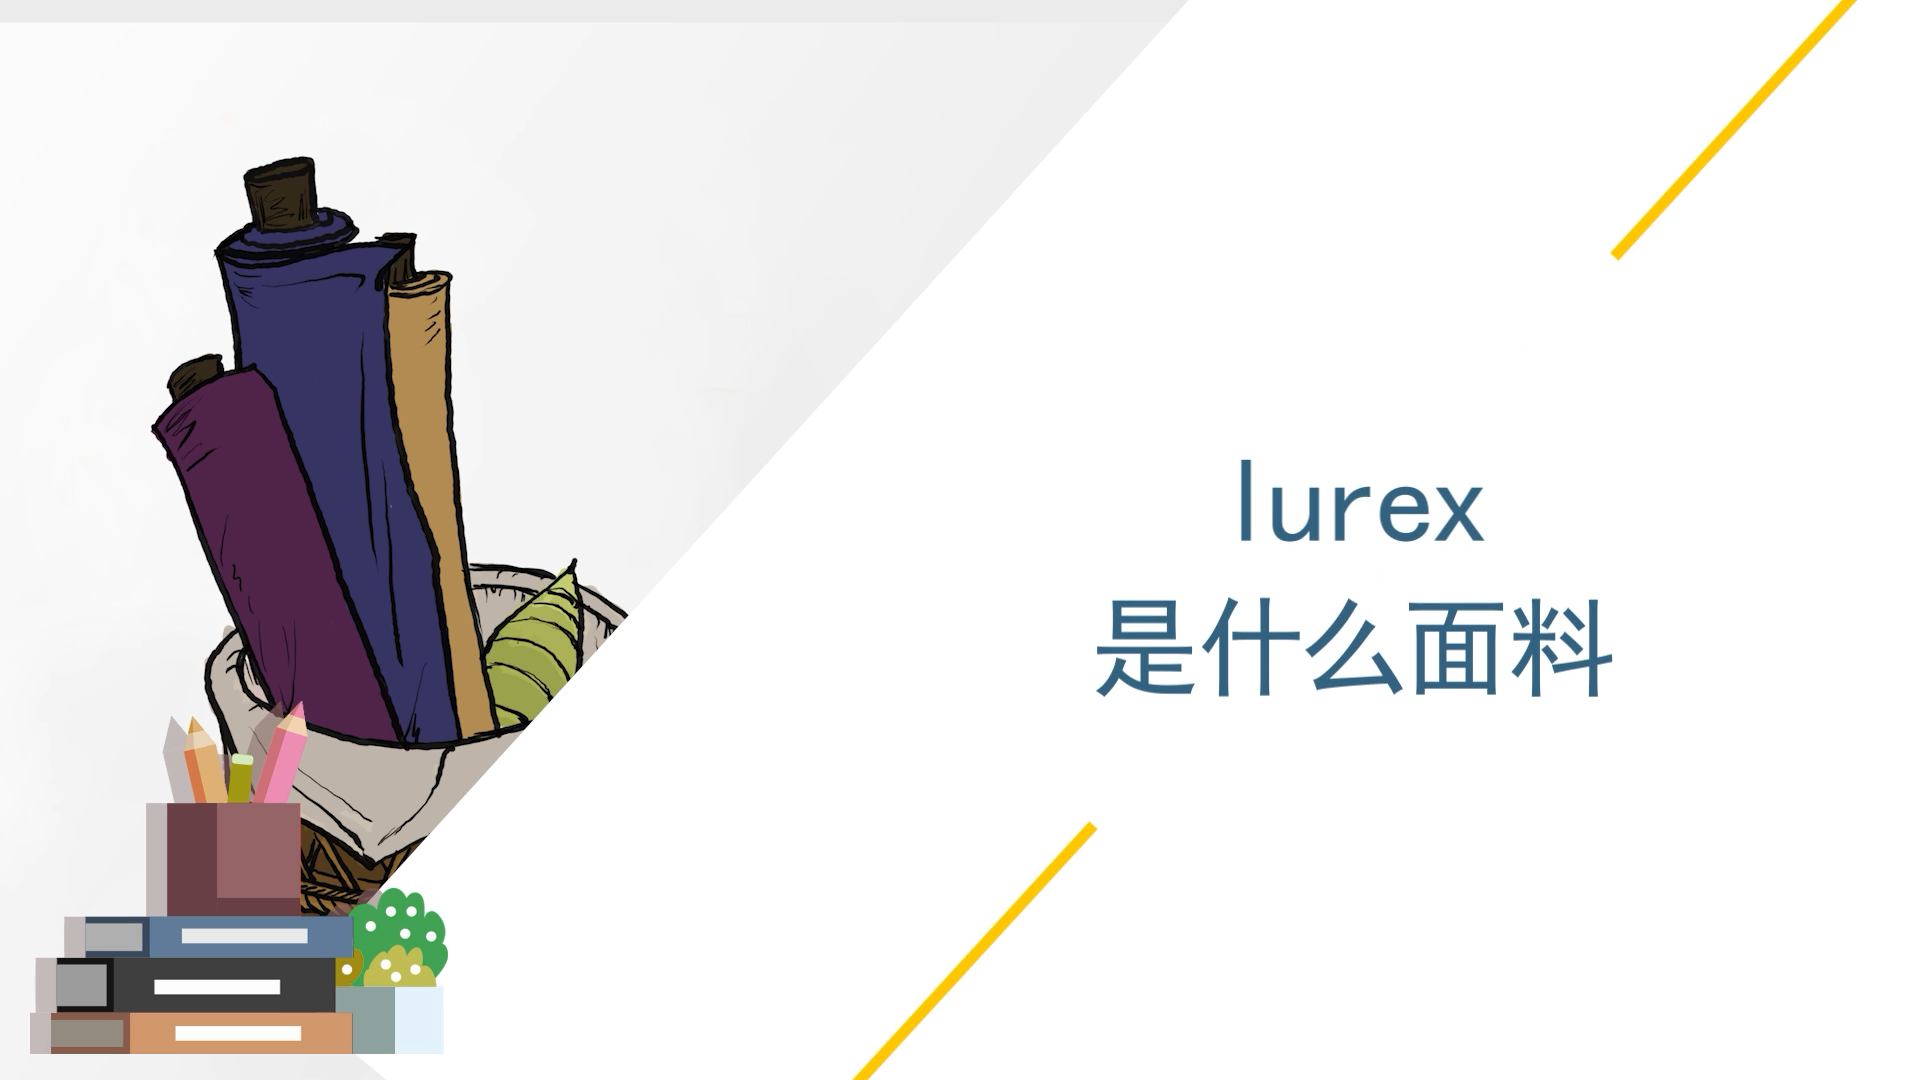 lurex是什么面料